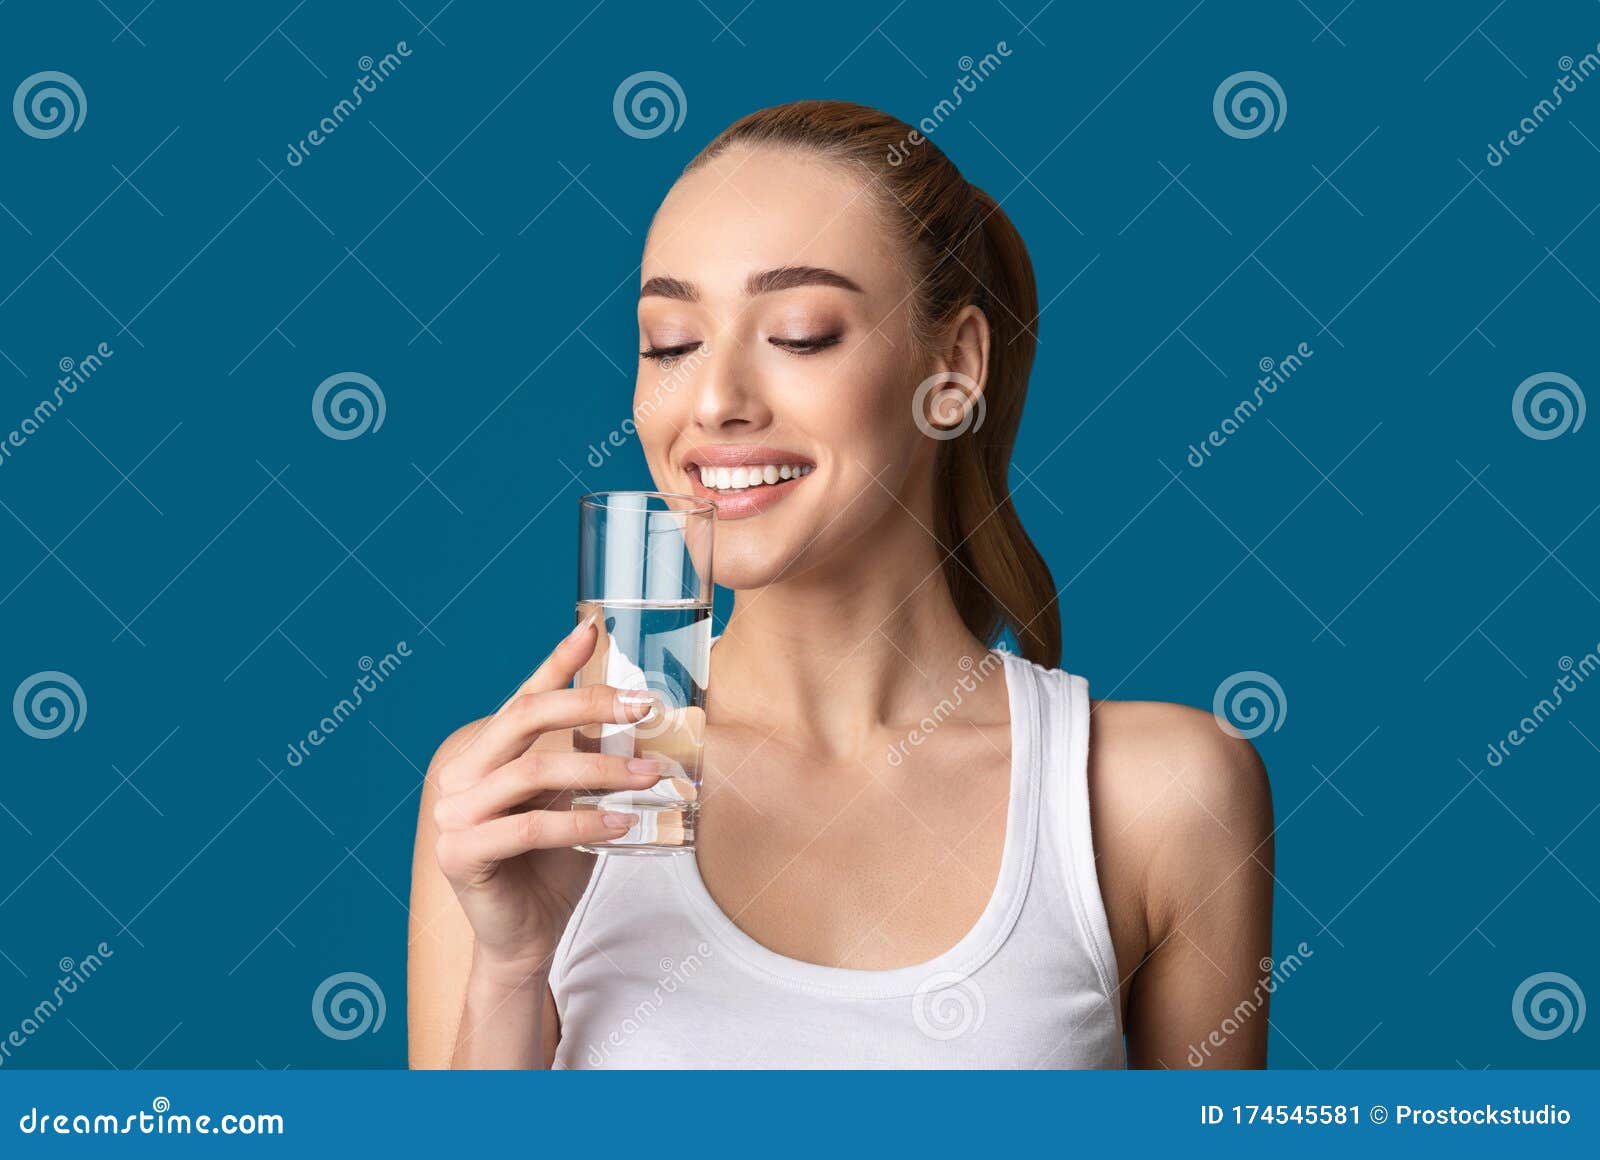 Можно пить воду стоя. Пьет воду из стакана. Девушка со стаканом воды. Пить воду стоя. Счастливая девушка с стаканом воды.